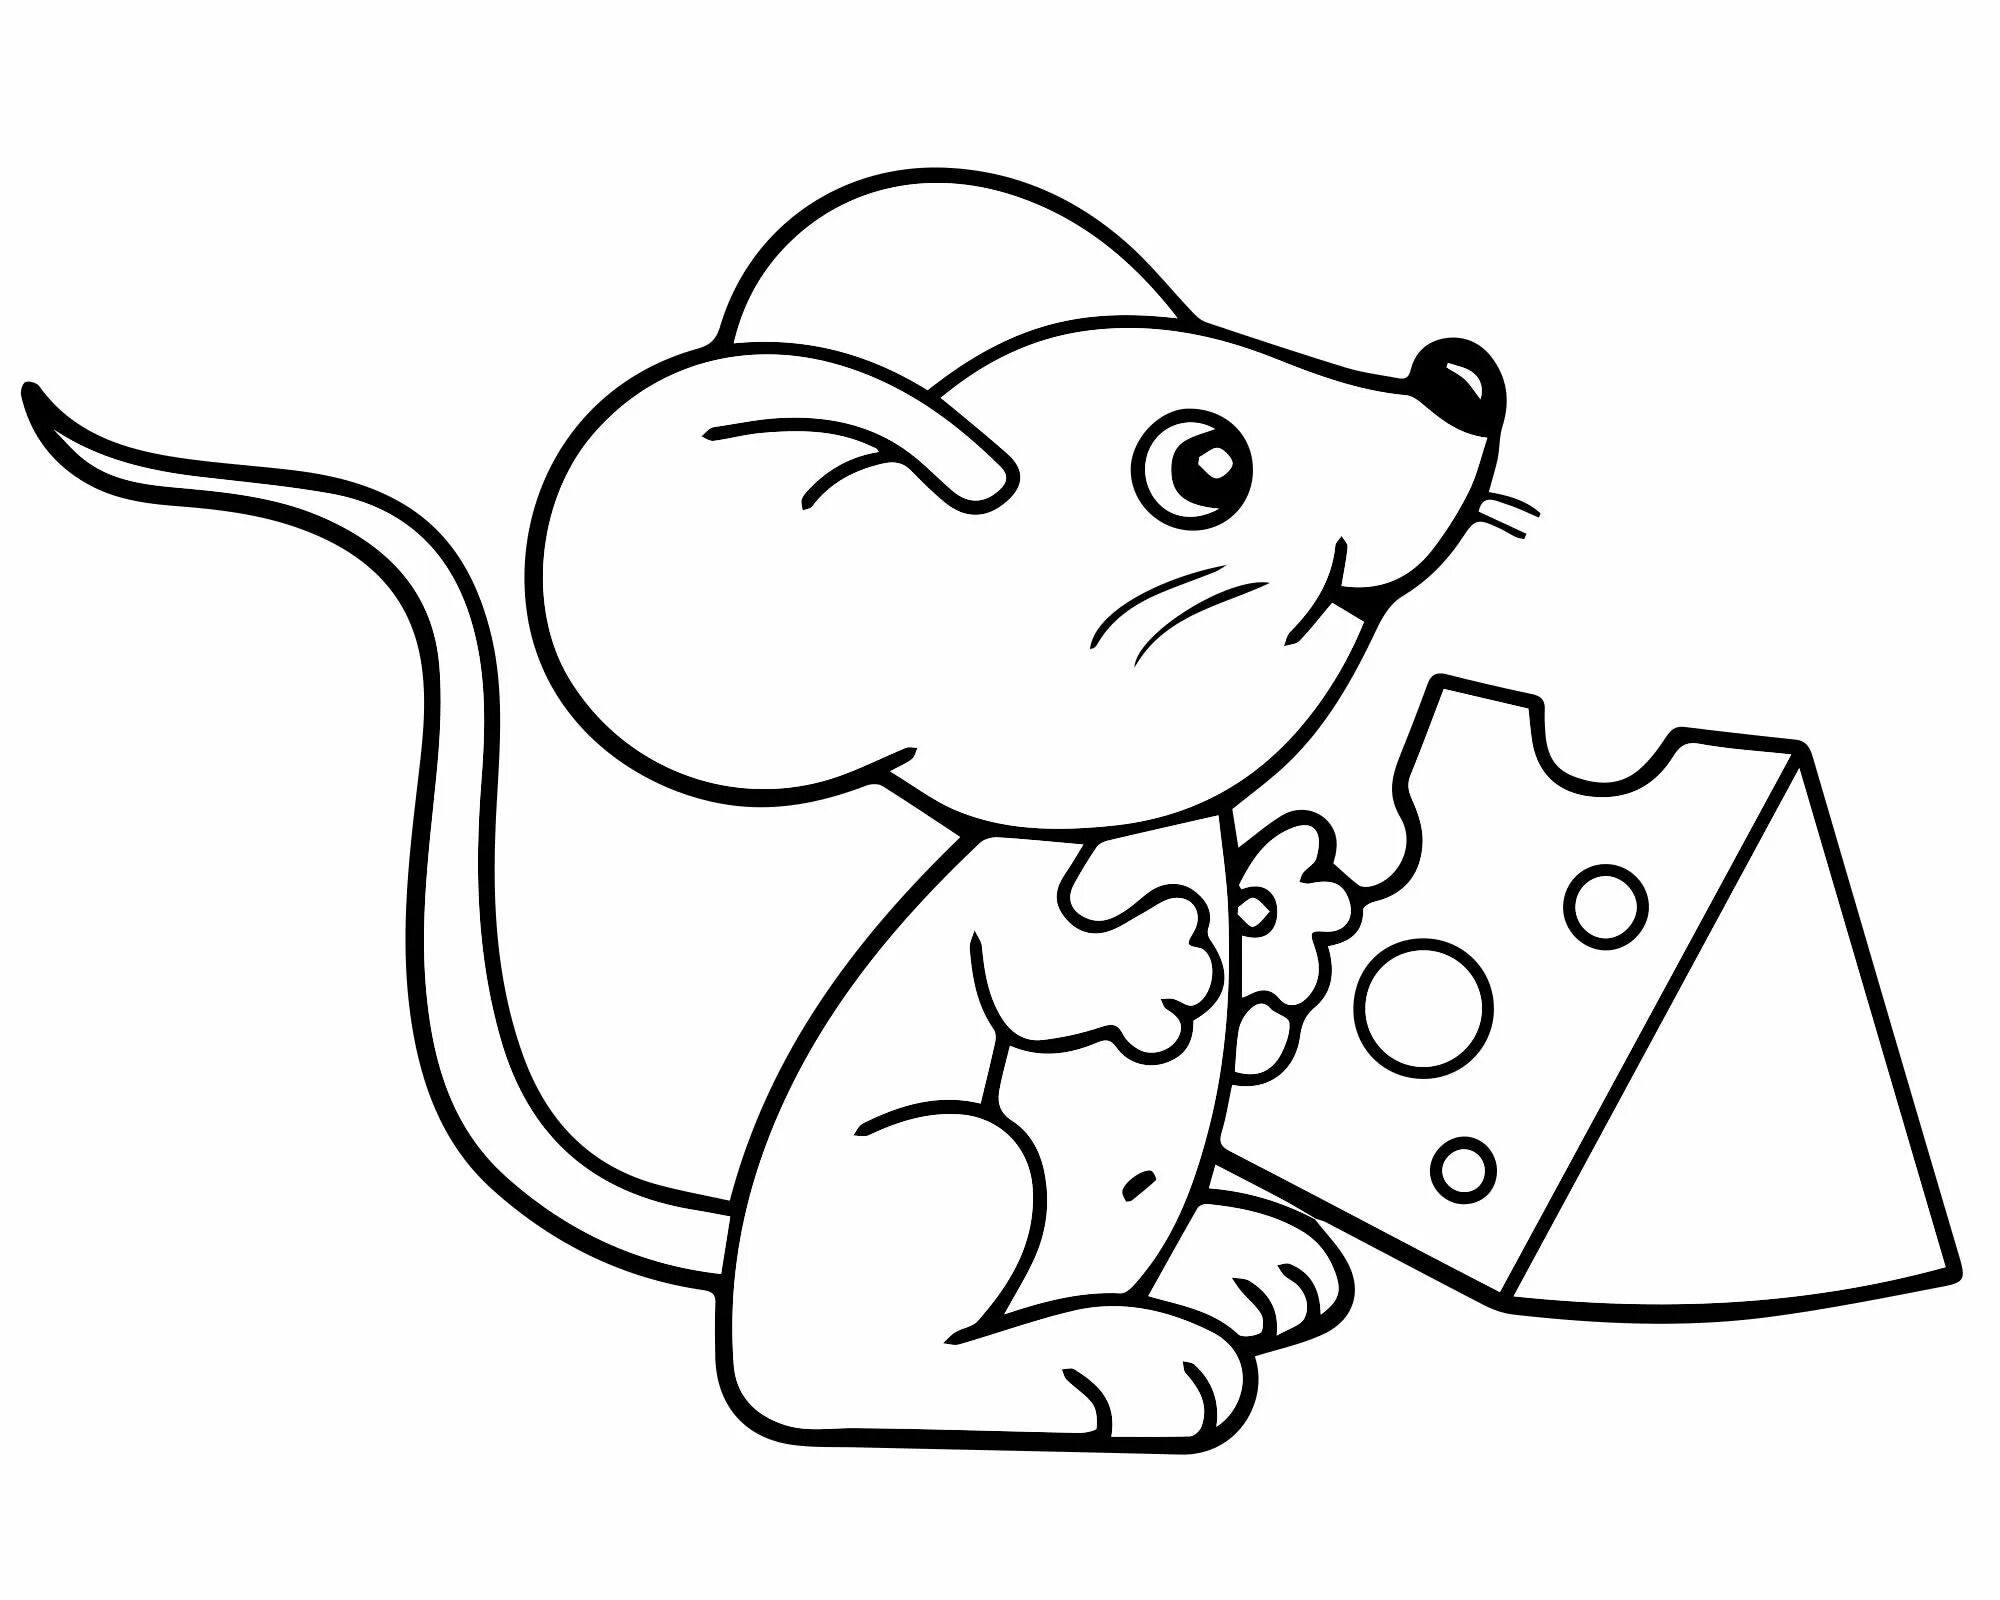 Великолепная раскраска мышь для детей 3-4 лет